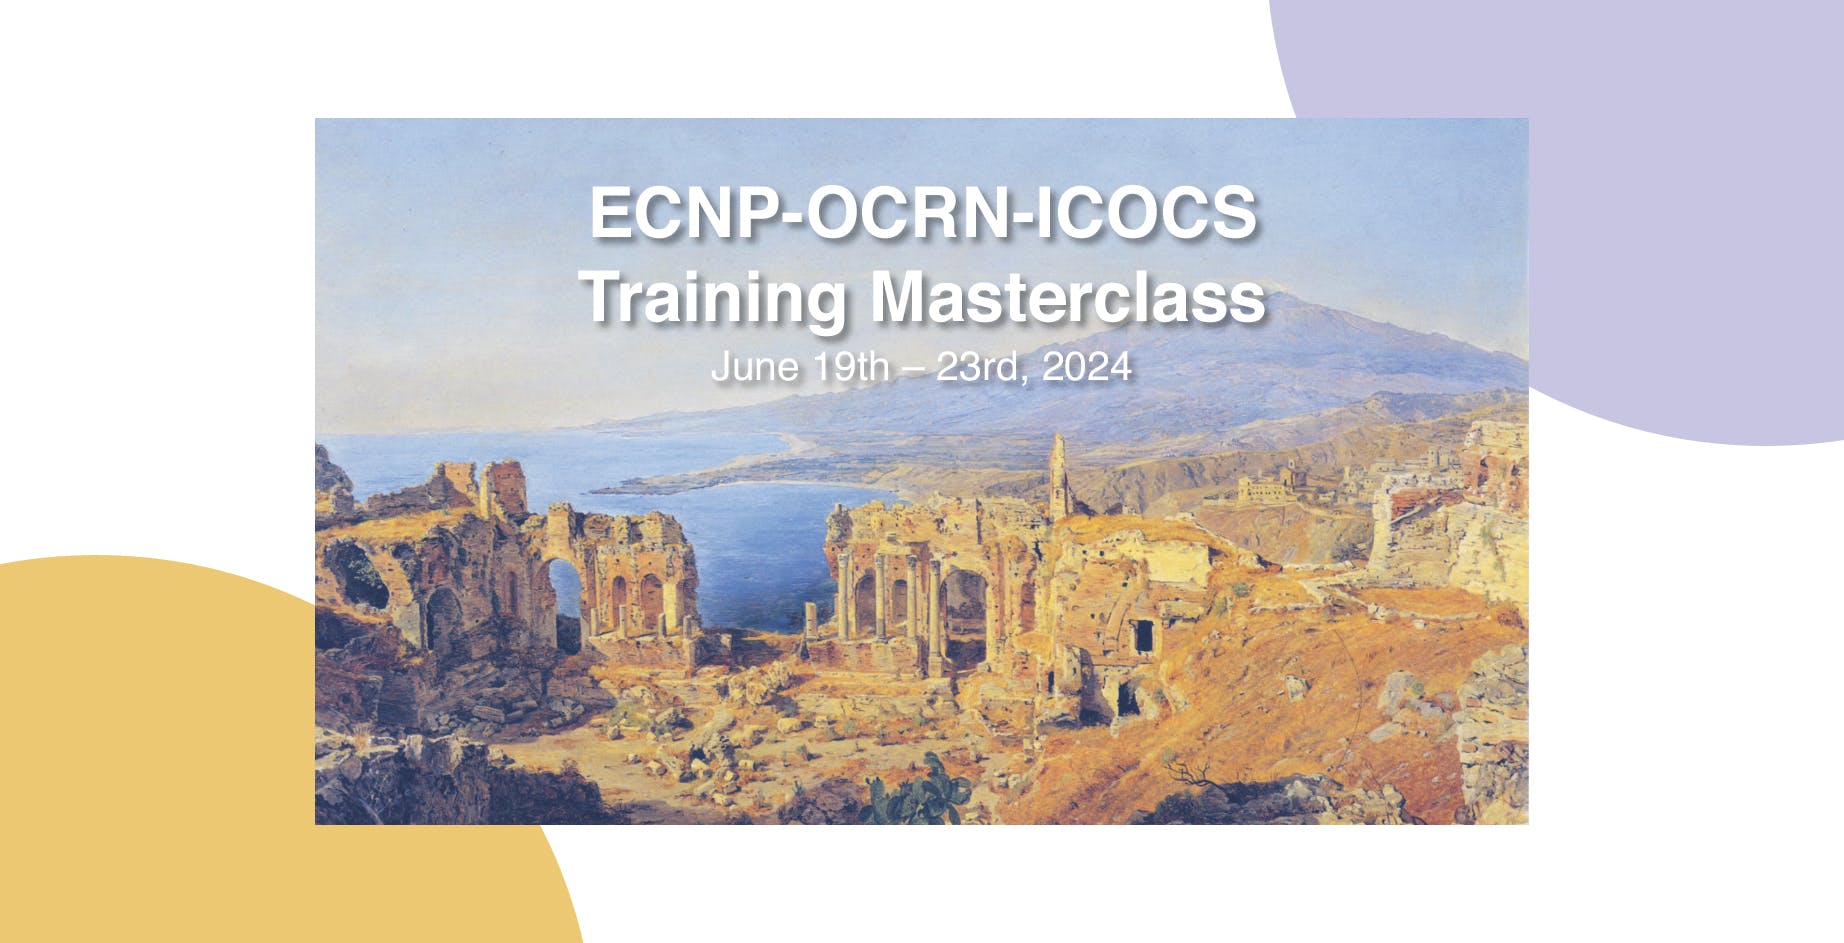 Locandina dell'ECNP-OCRN-ICOCS Training Masterclass 2024: Fotografia delle rovine di Taormina su sfondo bianco con scritta in sovrapposizione "ECNP-OCRN-ICOCS Training Masterclass: June 19th - 23rd, 2024"